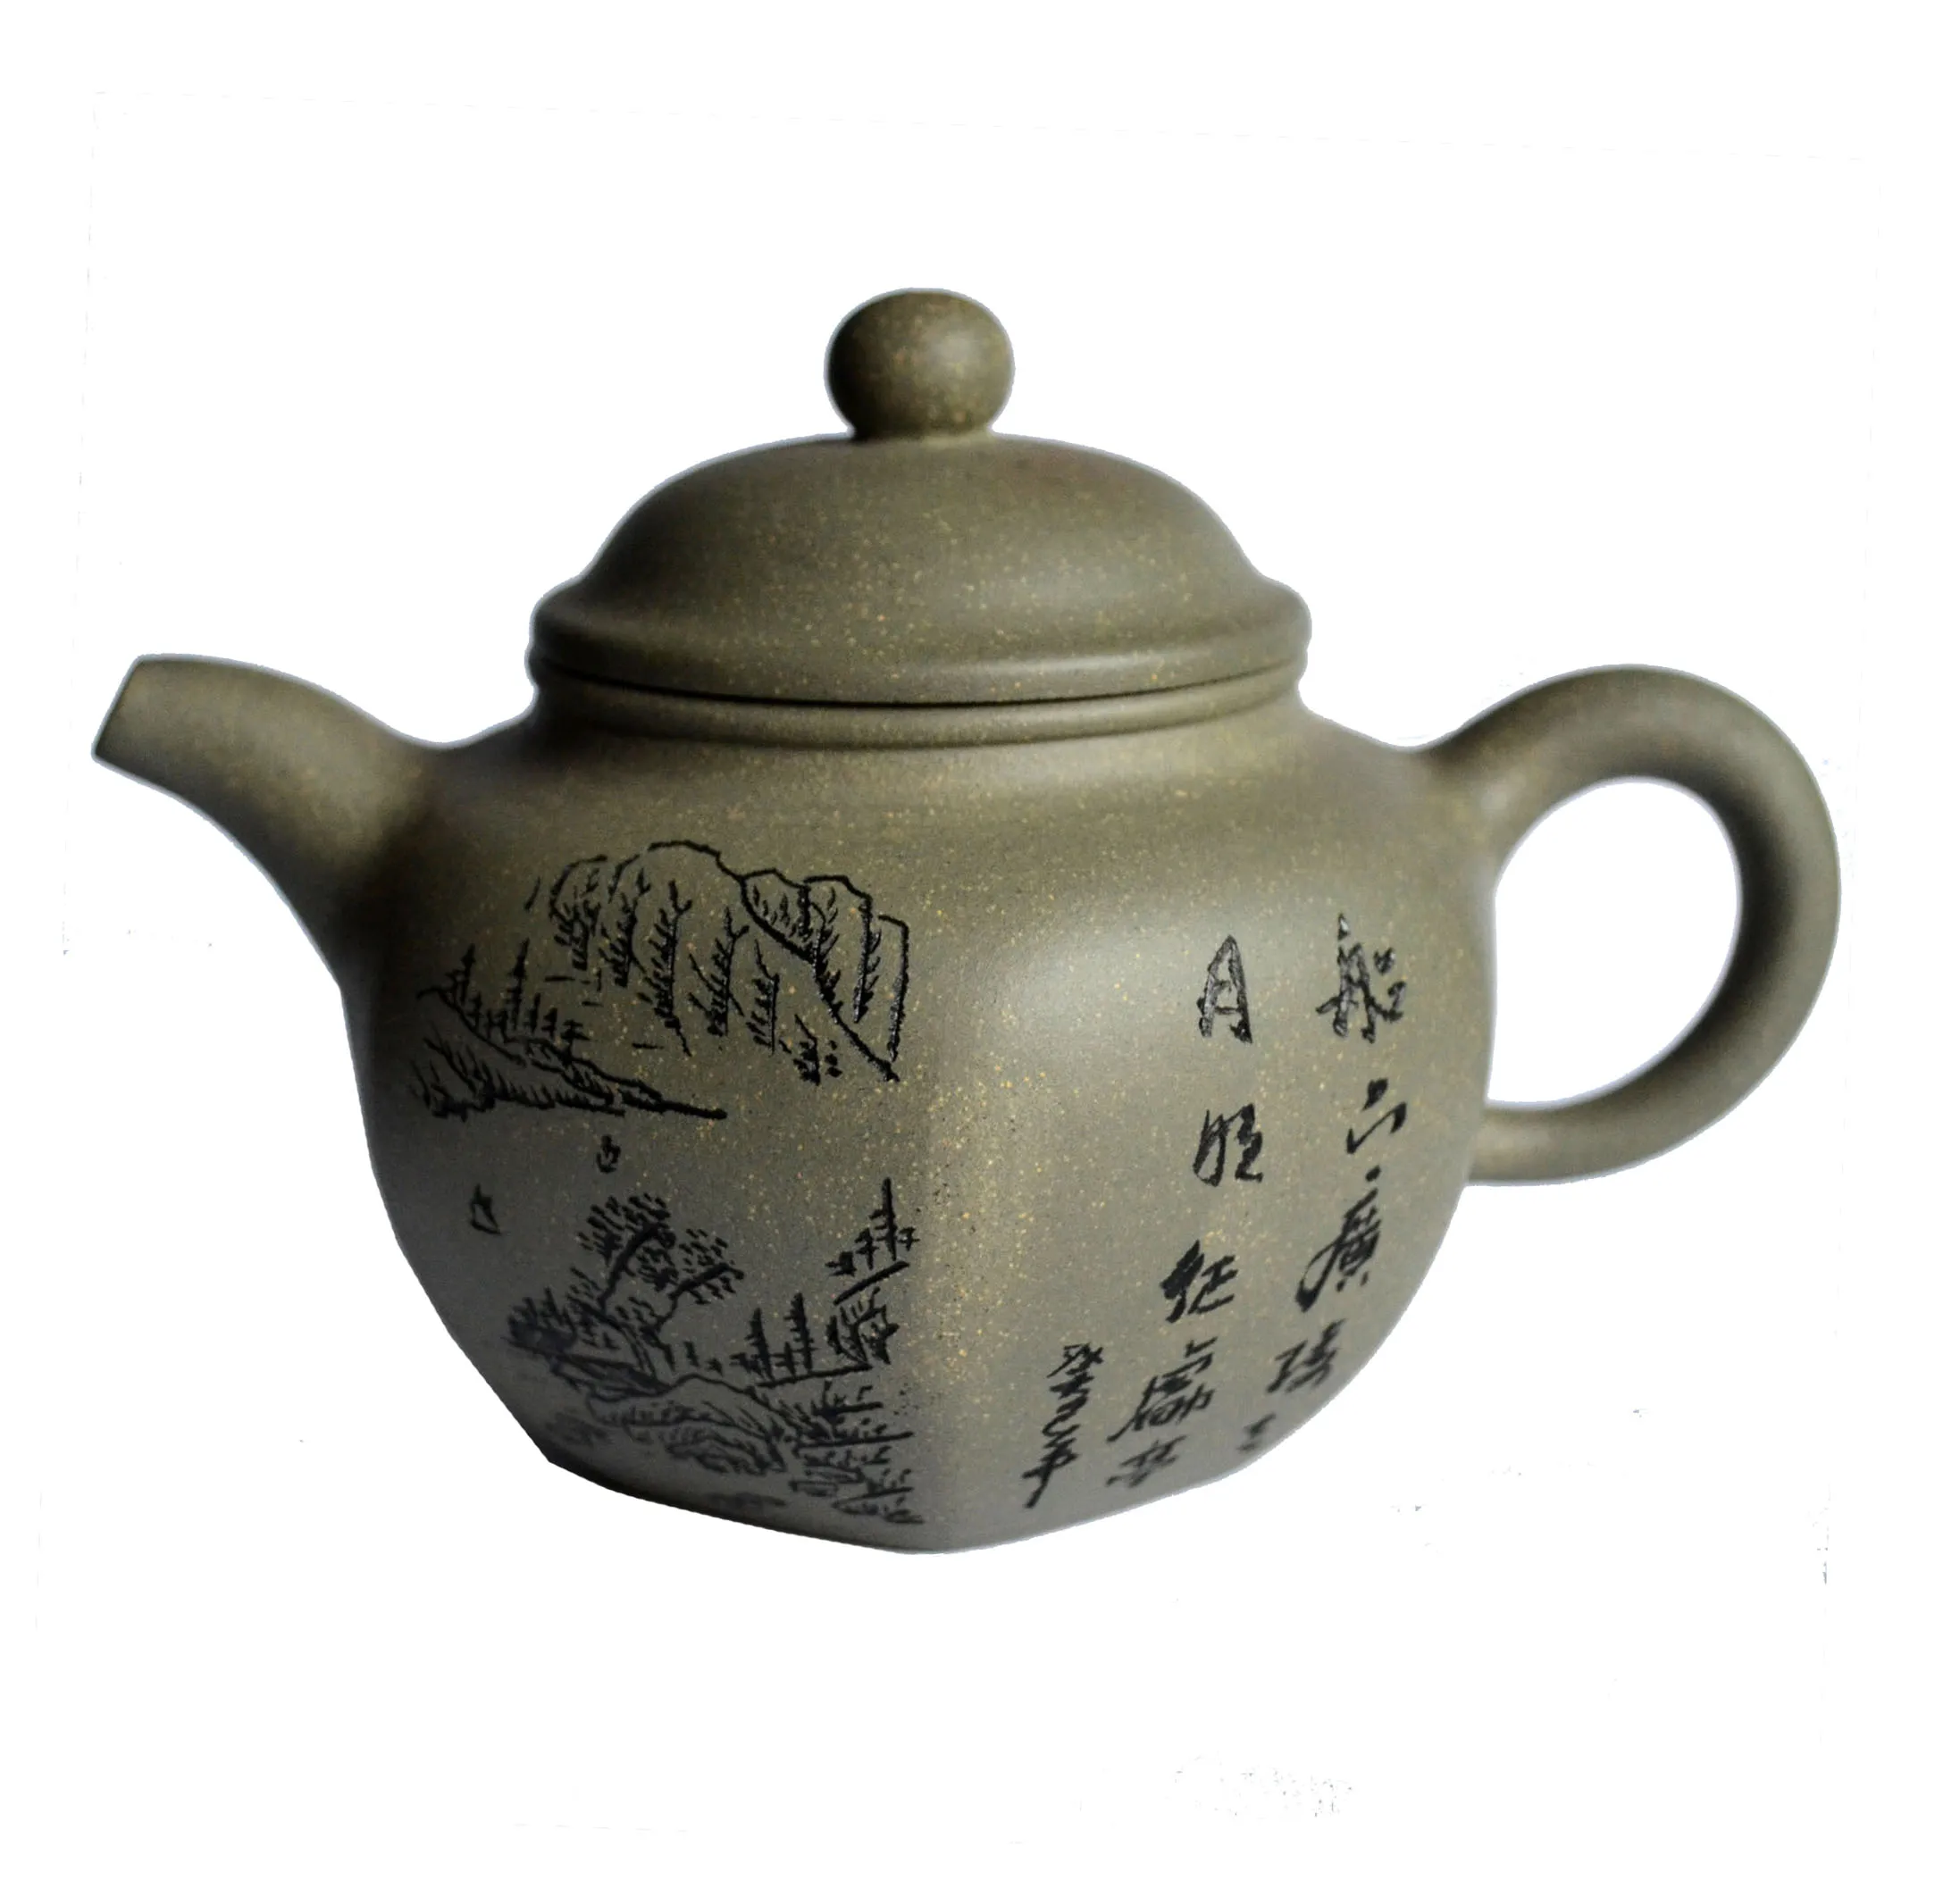 

Yixing zisha teapot 210ml Chinese kungfu Tea pots Hexagonal Green clay handmade Soak Puer Dahongpao Tie Guan yin kettle teaware